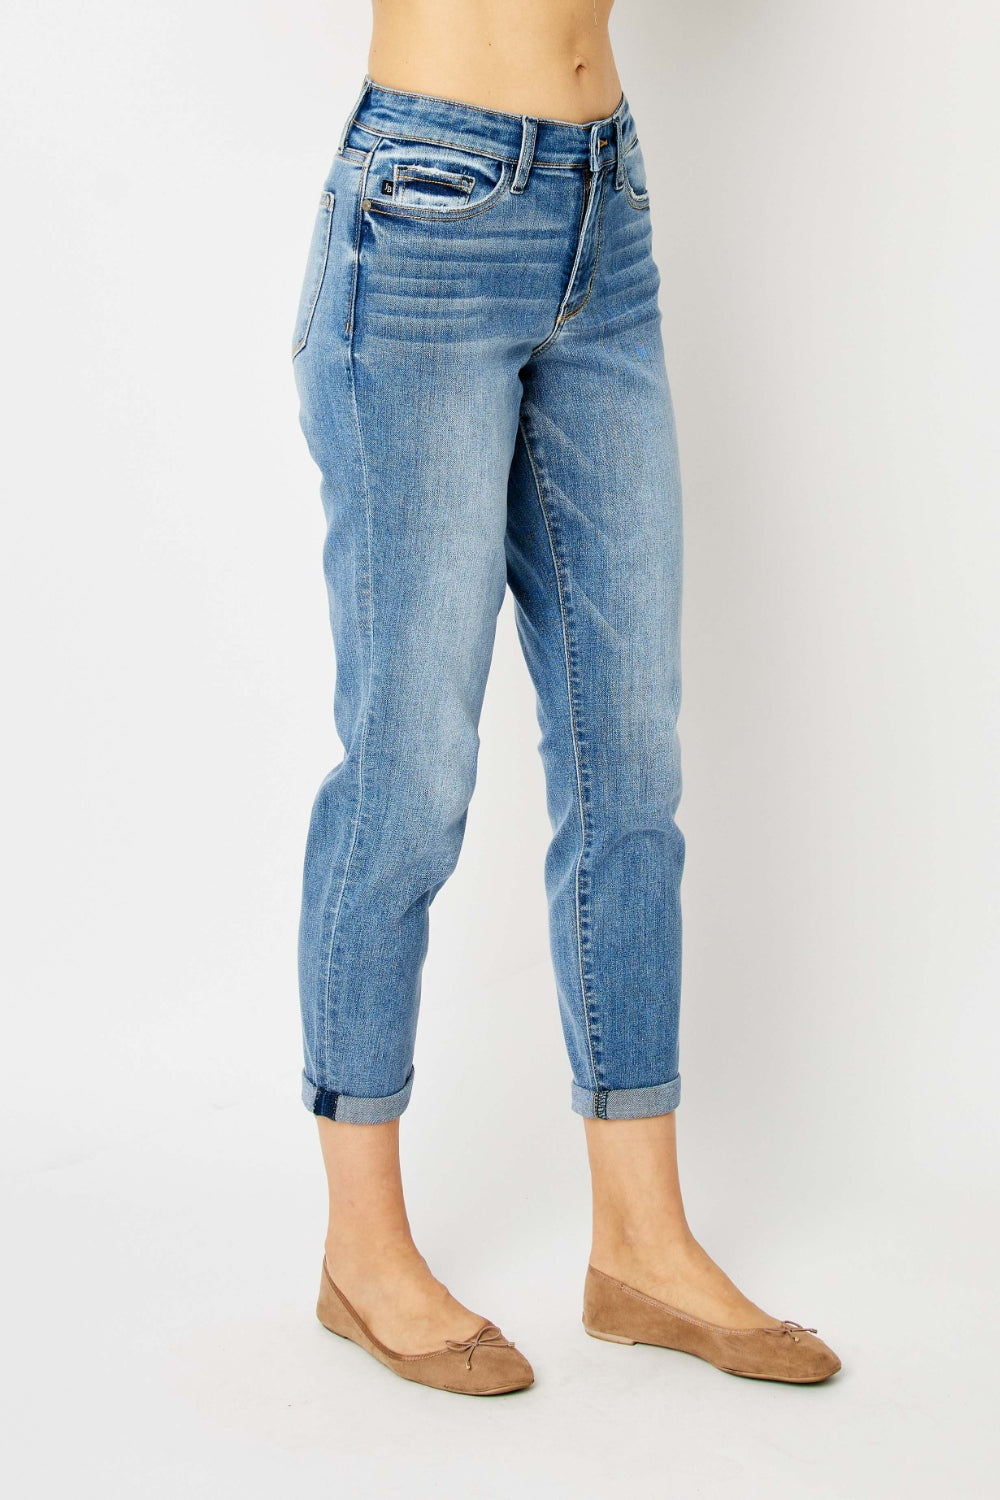 Judy Blue Apple Tree Full Size Cuffed Hem Slim Jeans